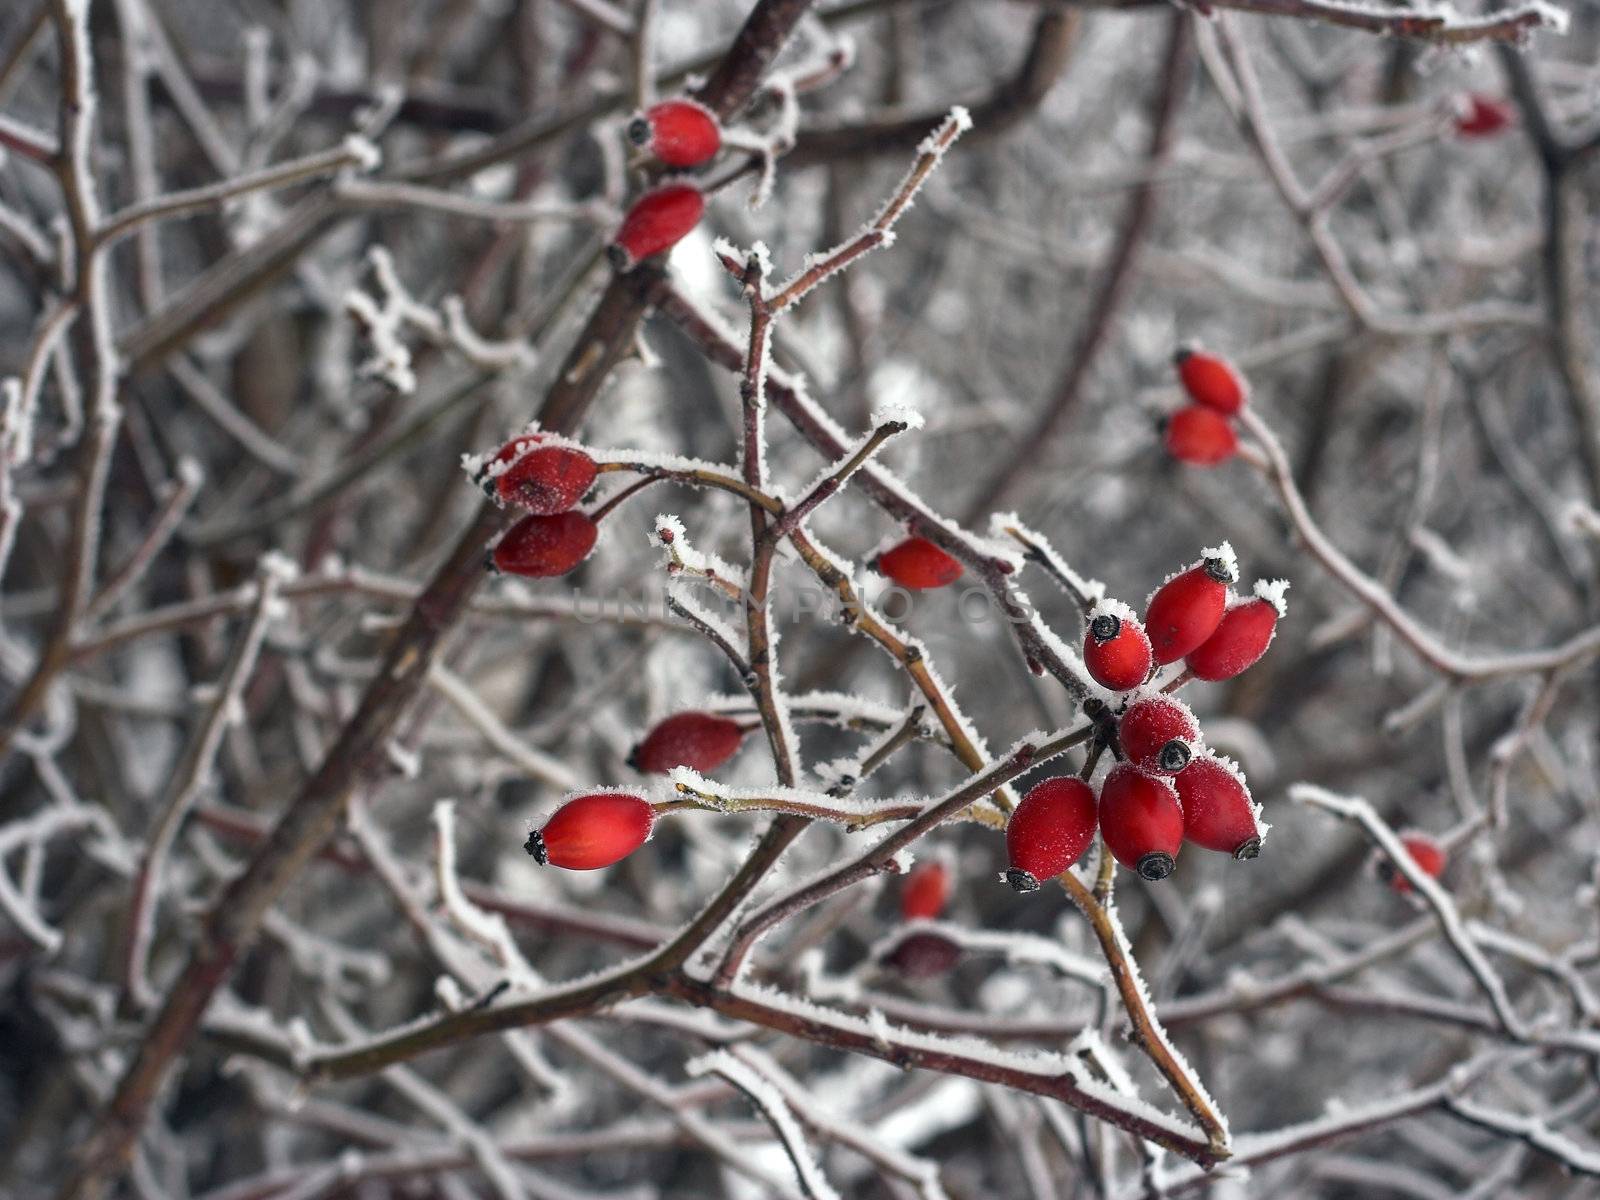 Rose hips in winter  by alexkosev